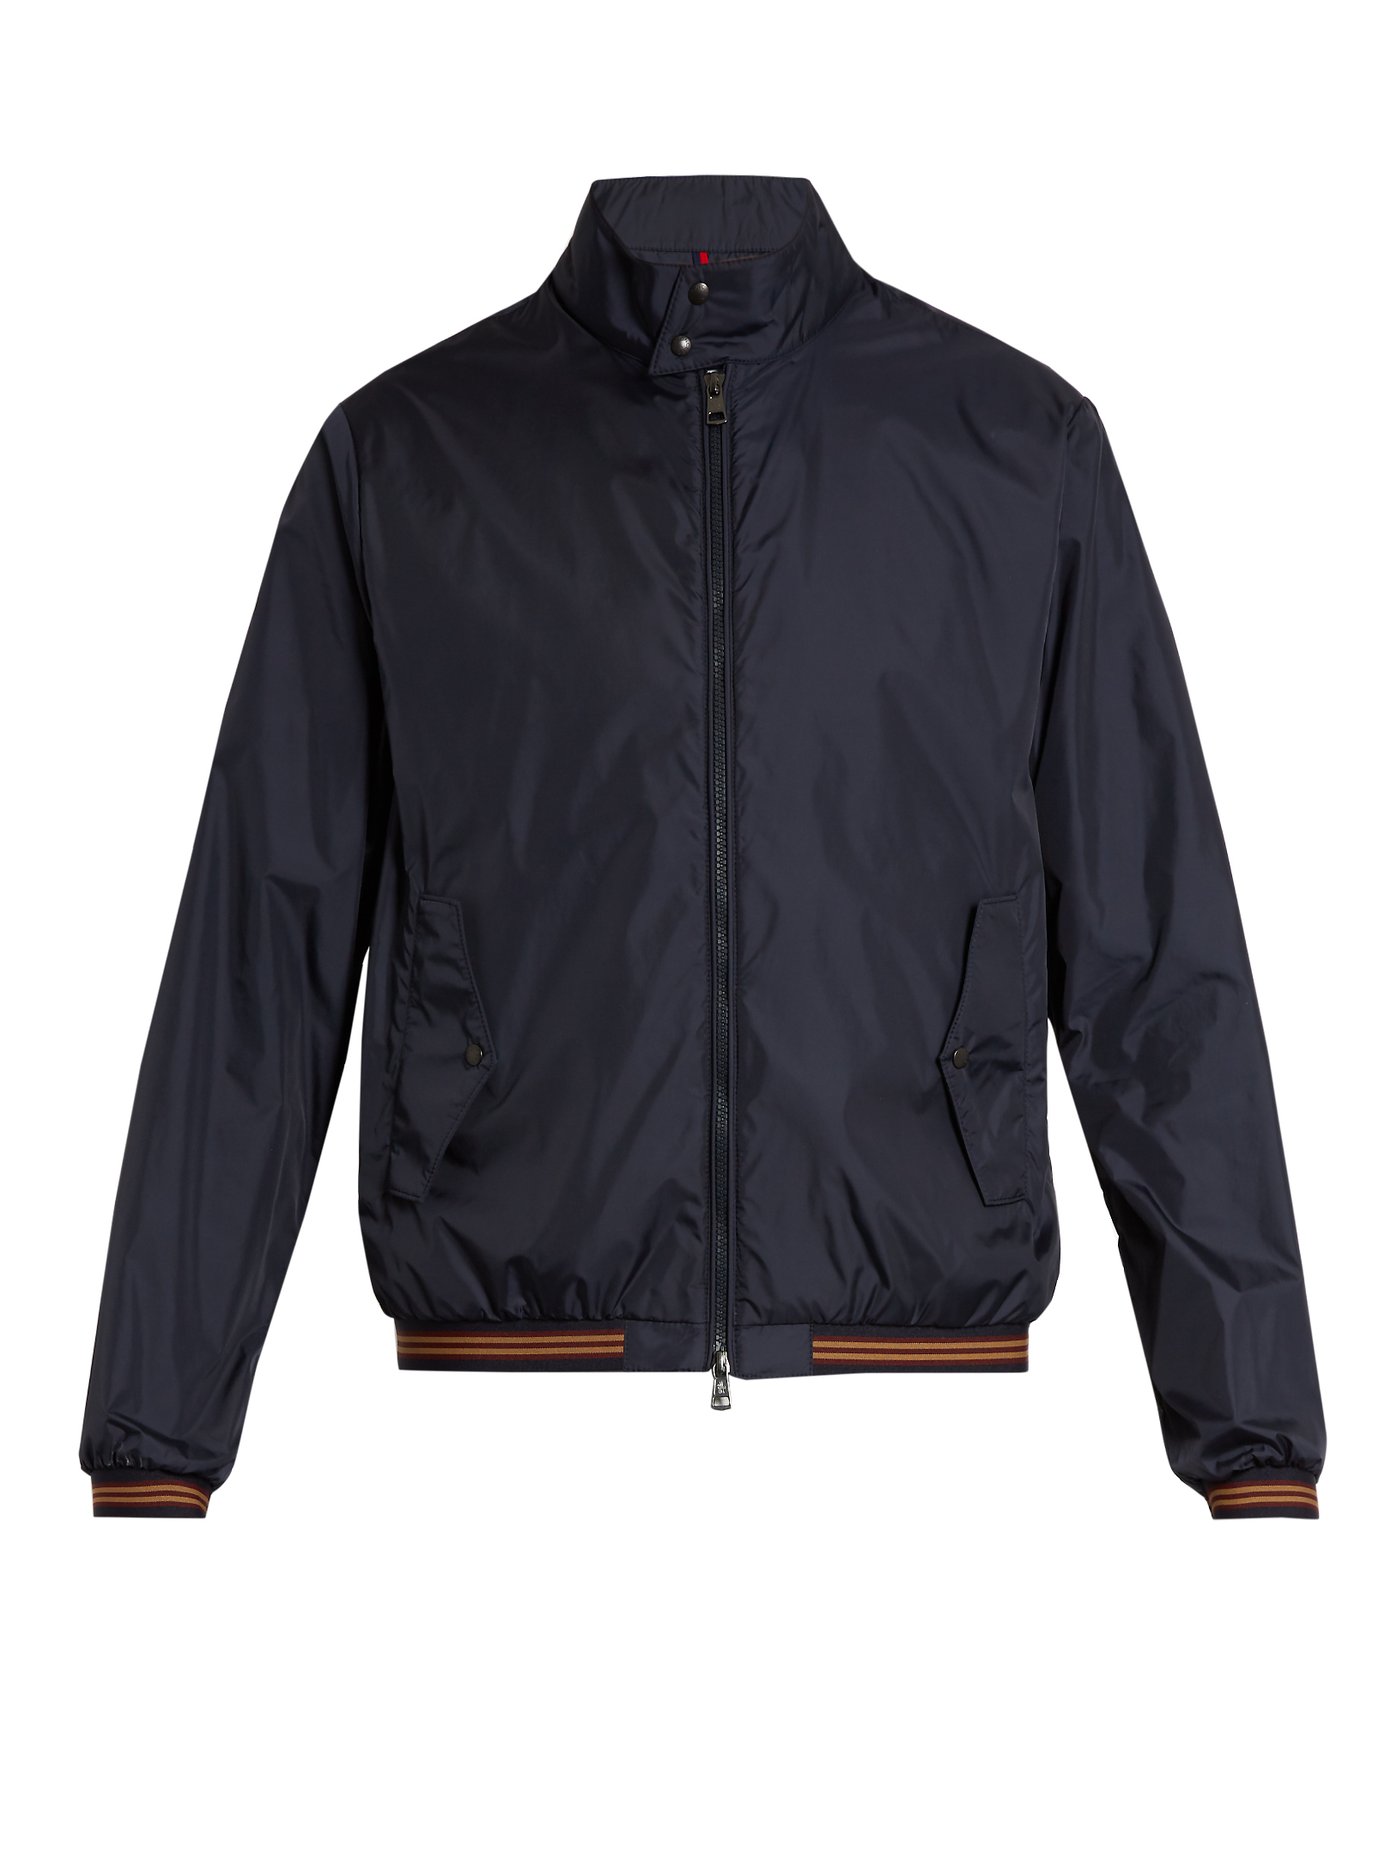 Lamy nylon jacket | Moncler 